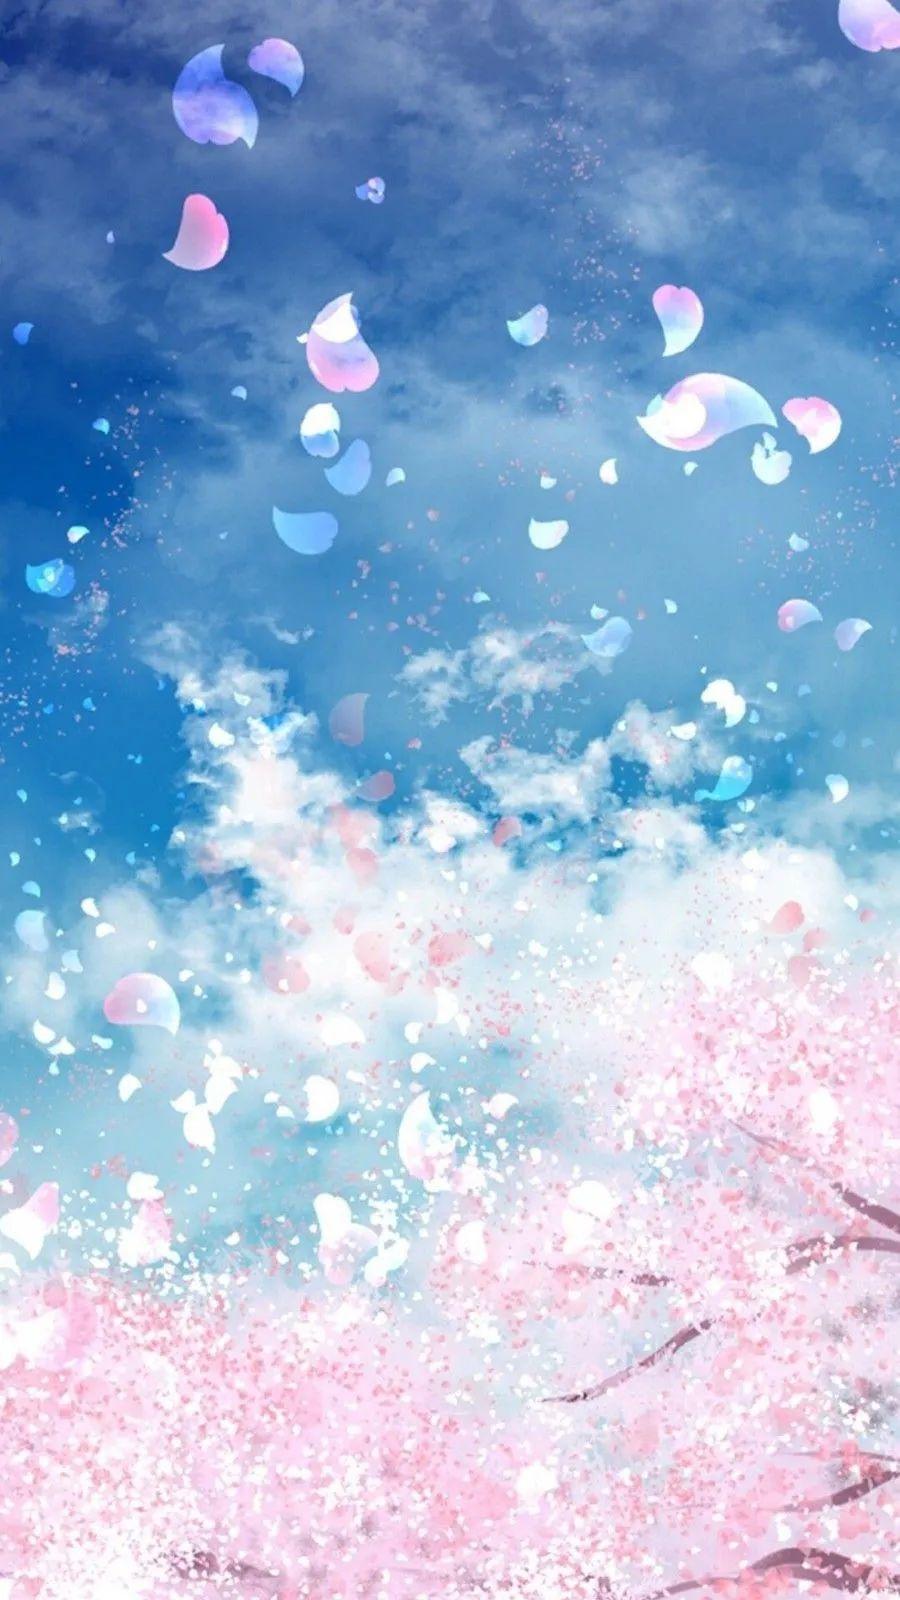 10张清新粉蓝色夏日手机壁纸!天蓝色超美的!